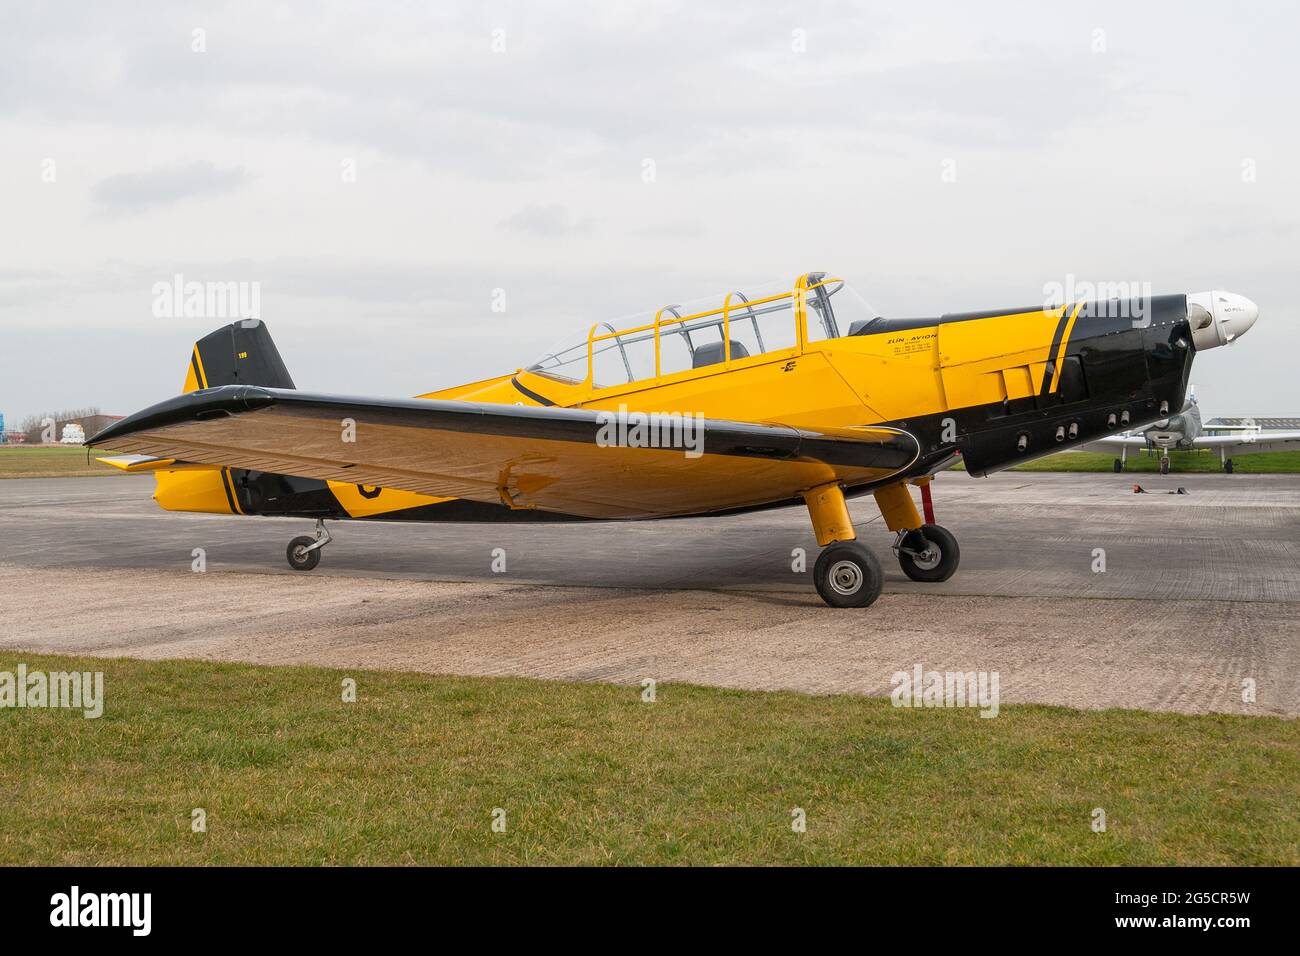 A Zlin aircraft at Breighton Stock Photo